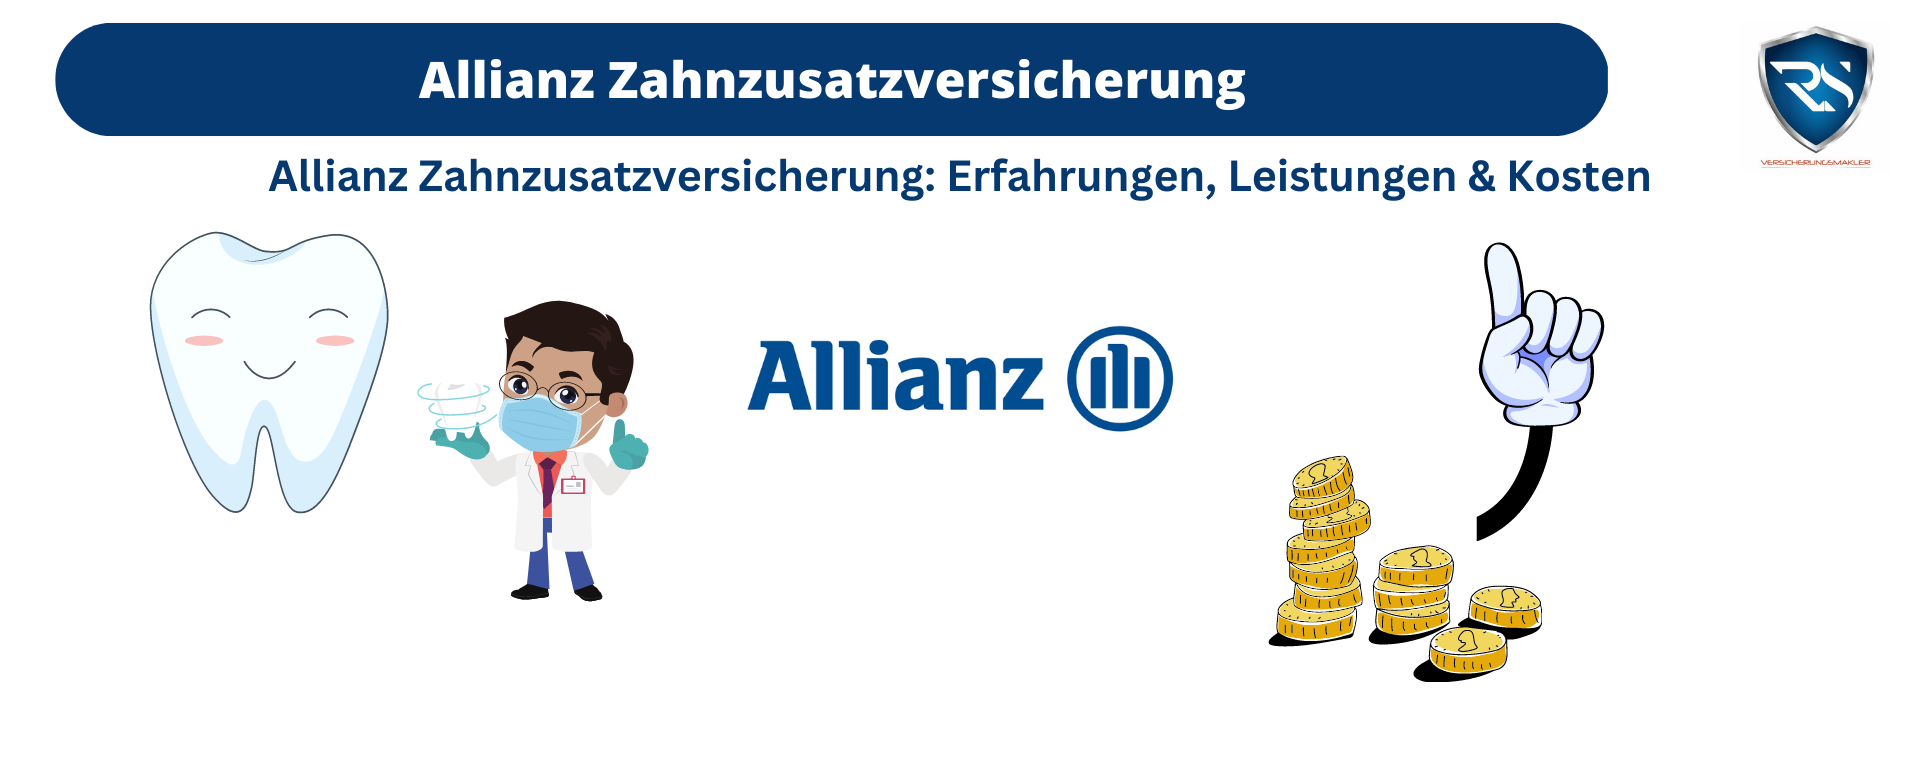 Allianz Zahnzusatzversicherung: Erfahrungen, Leistungen & Kosten